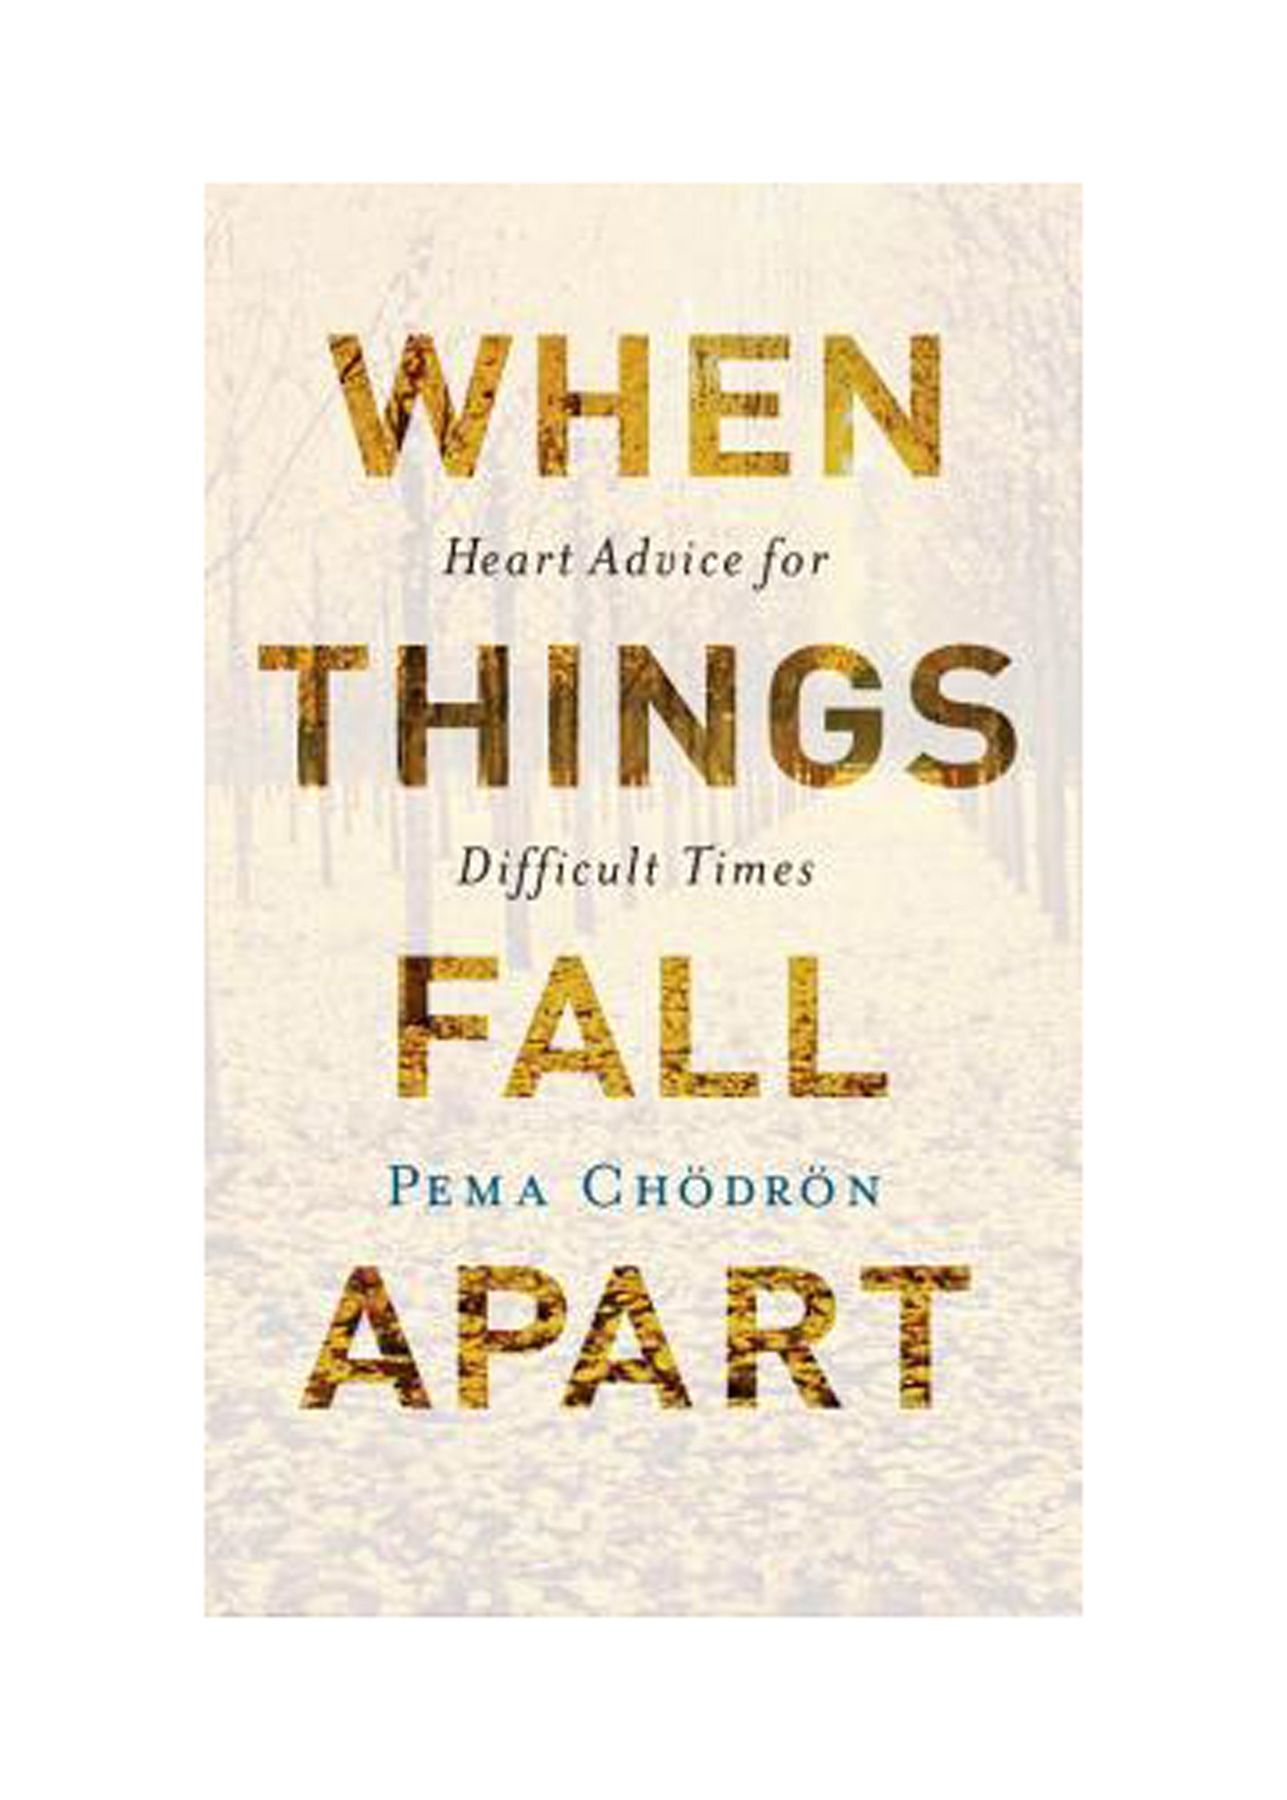 Raamatud lahkuminekuteks: kui asjad lagunevad: südamenõuanded rasketeks aegadeks, autor Pema Chödrön